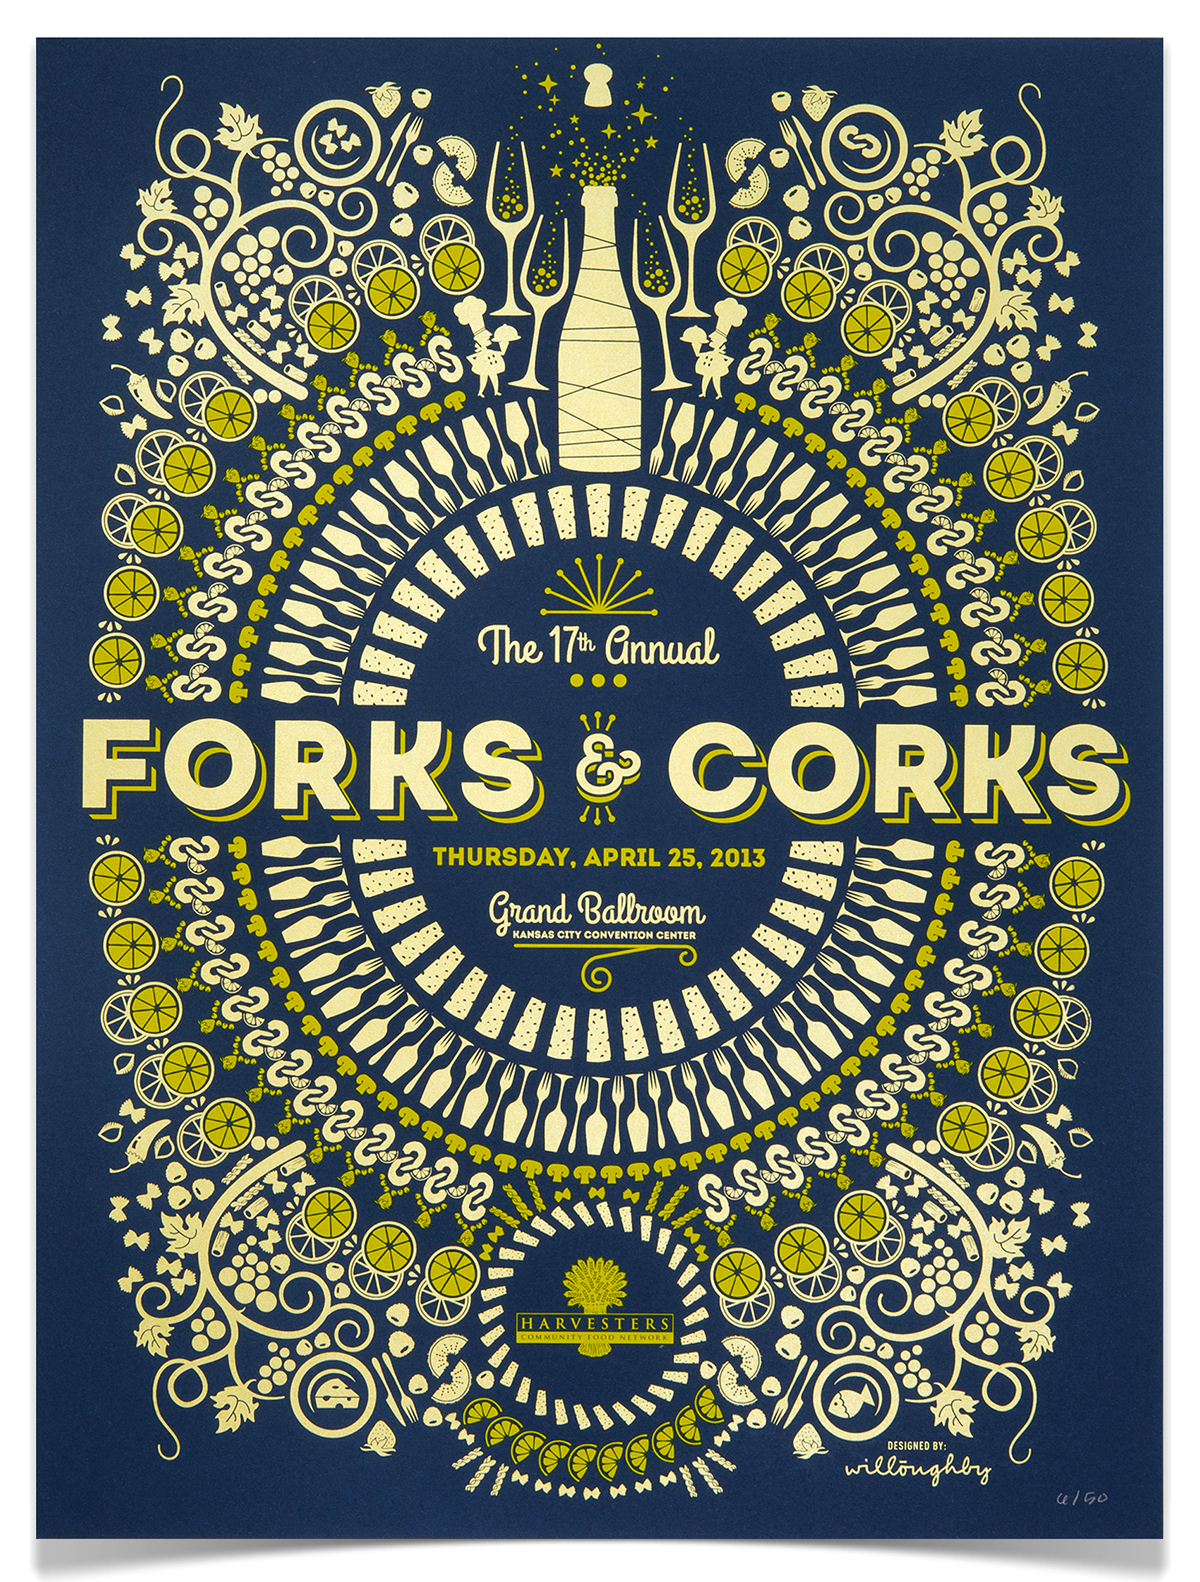 posters poster Forks & Corks Forks and Corks harvesters Event Event Branding